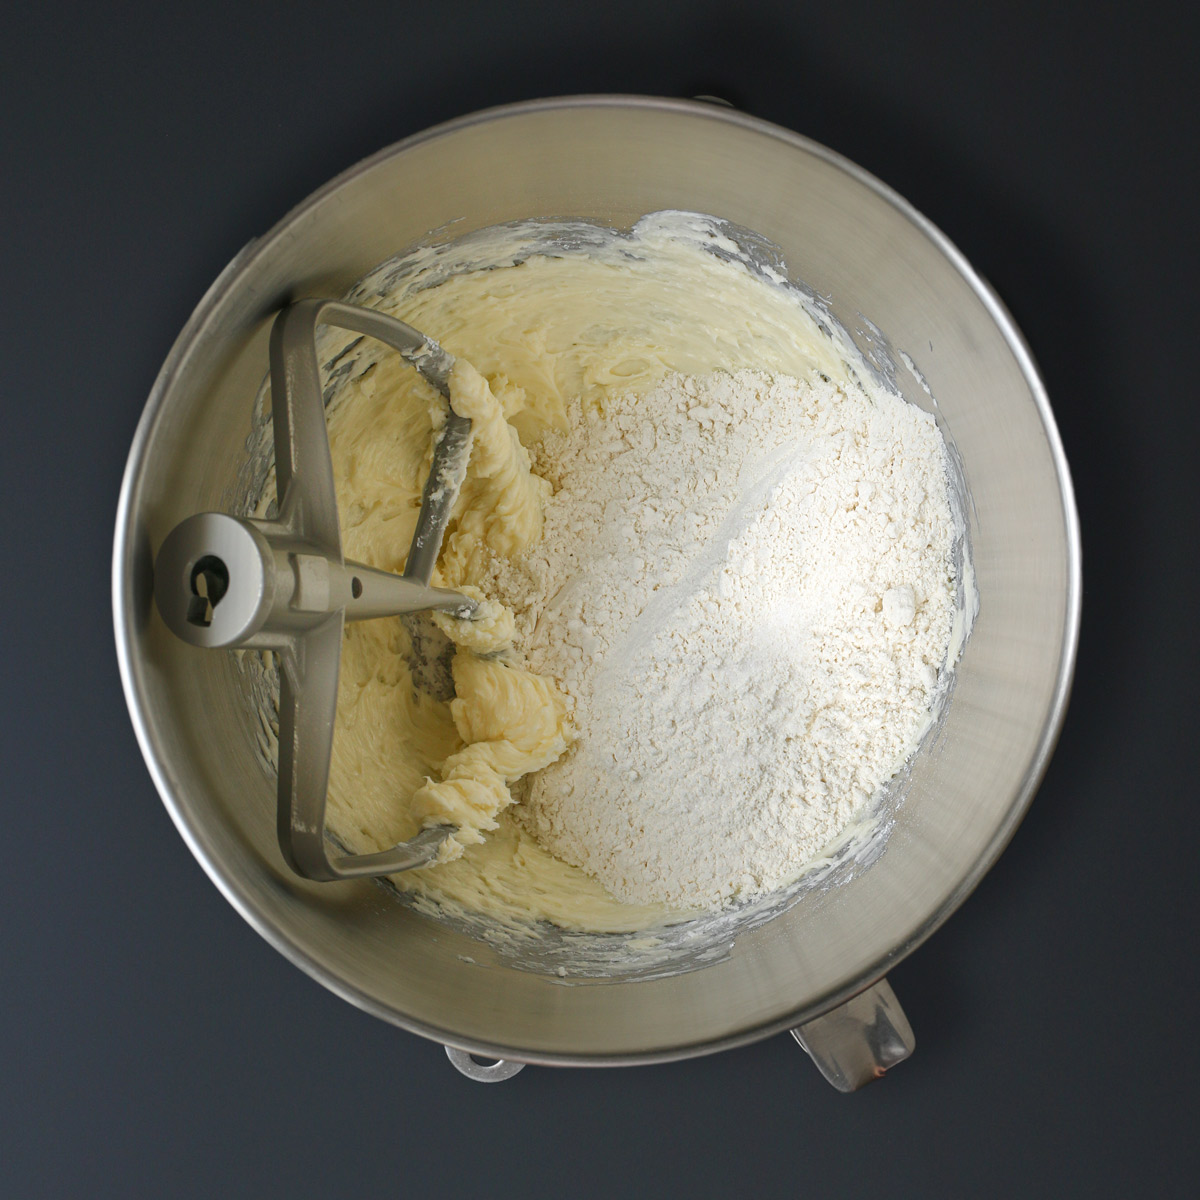 adding flour and salt to butter mixture.